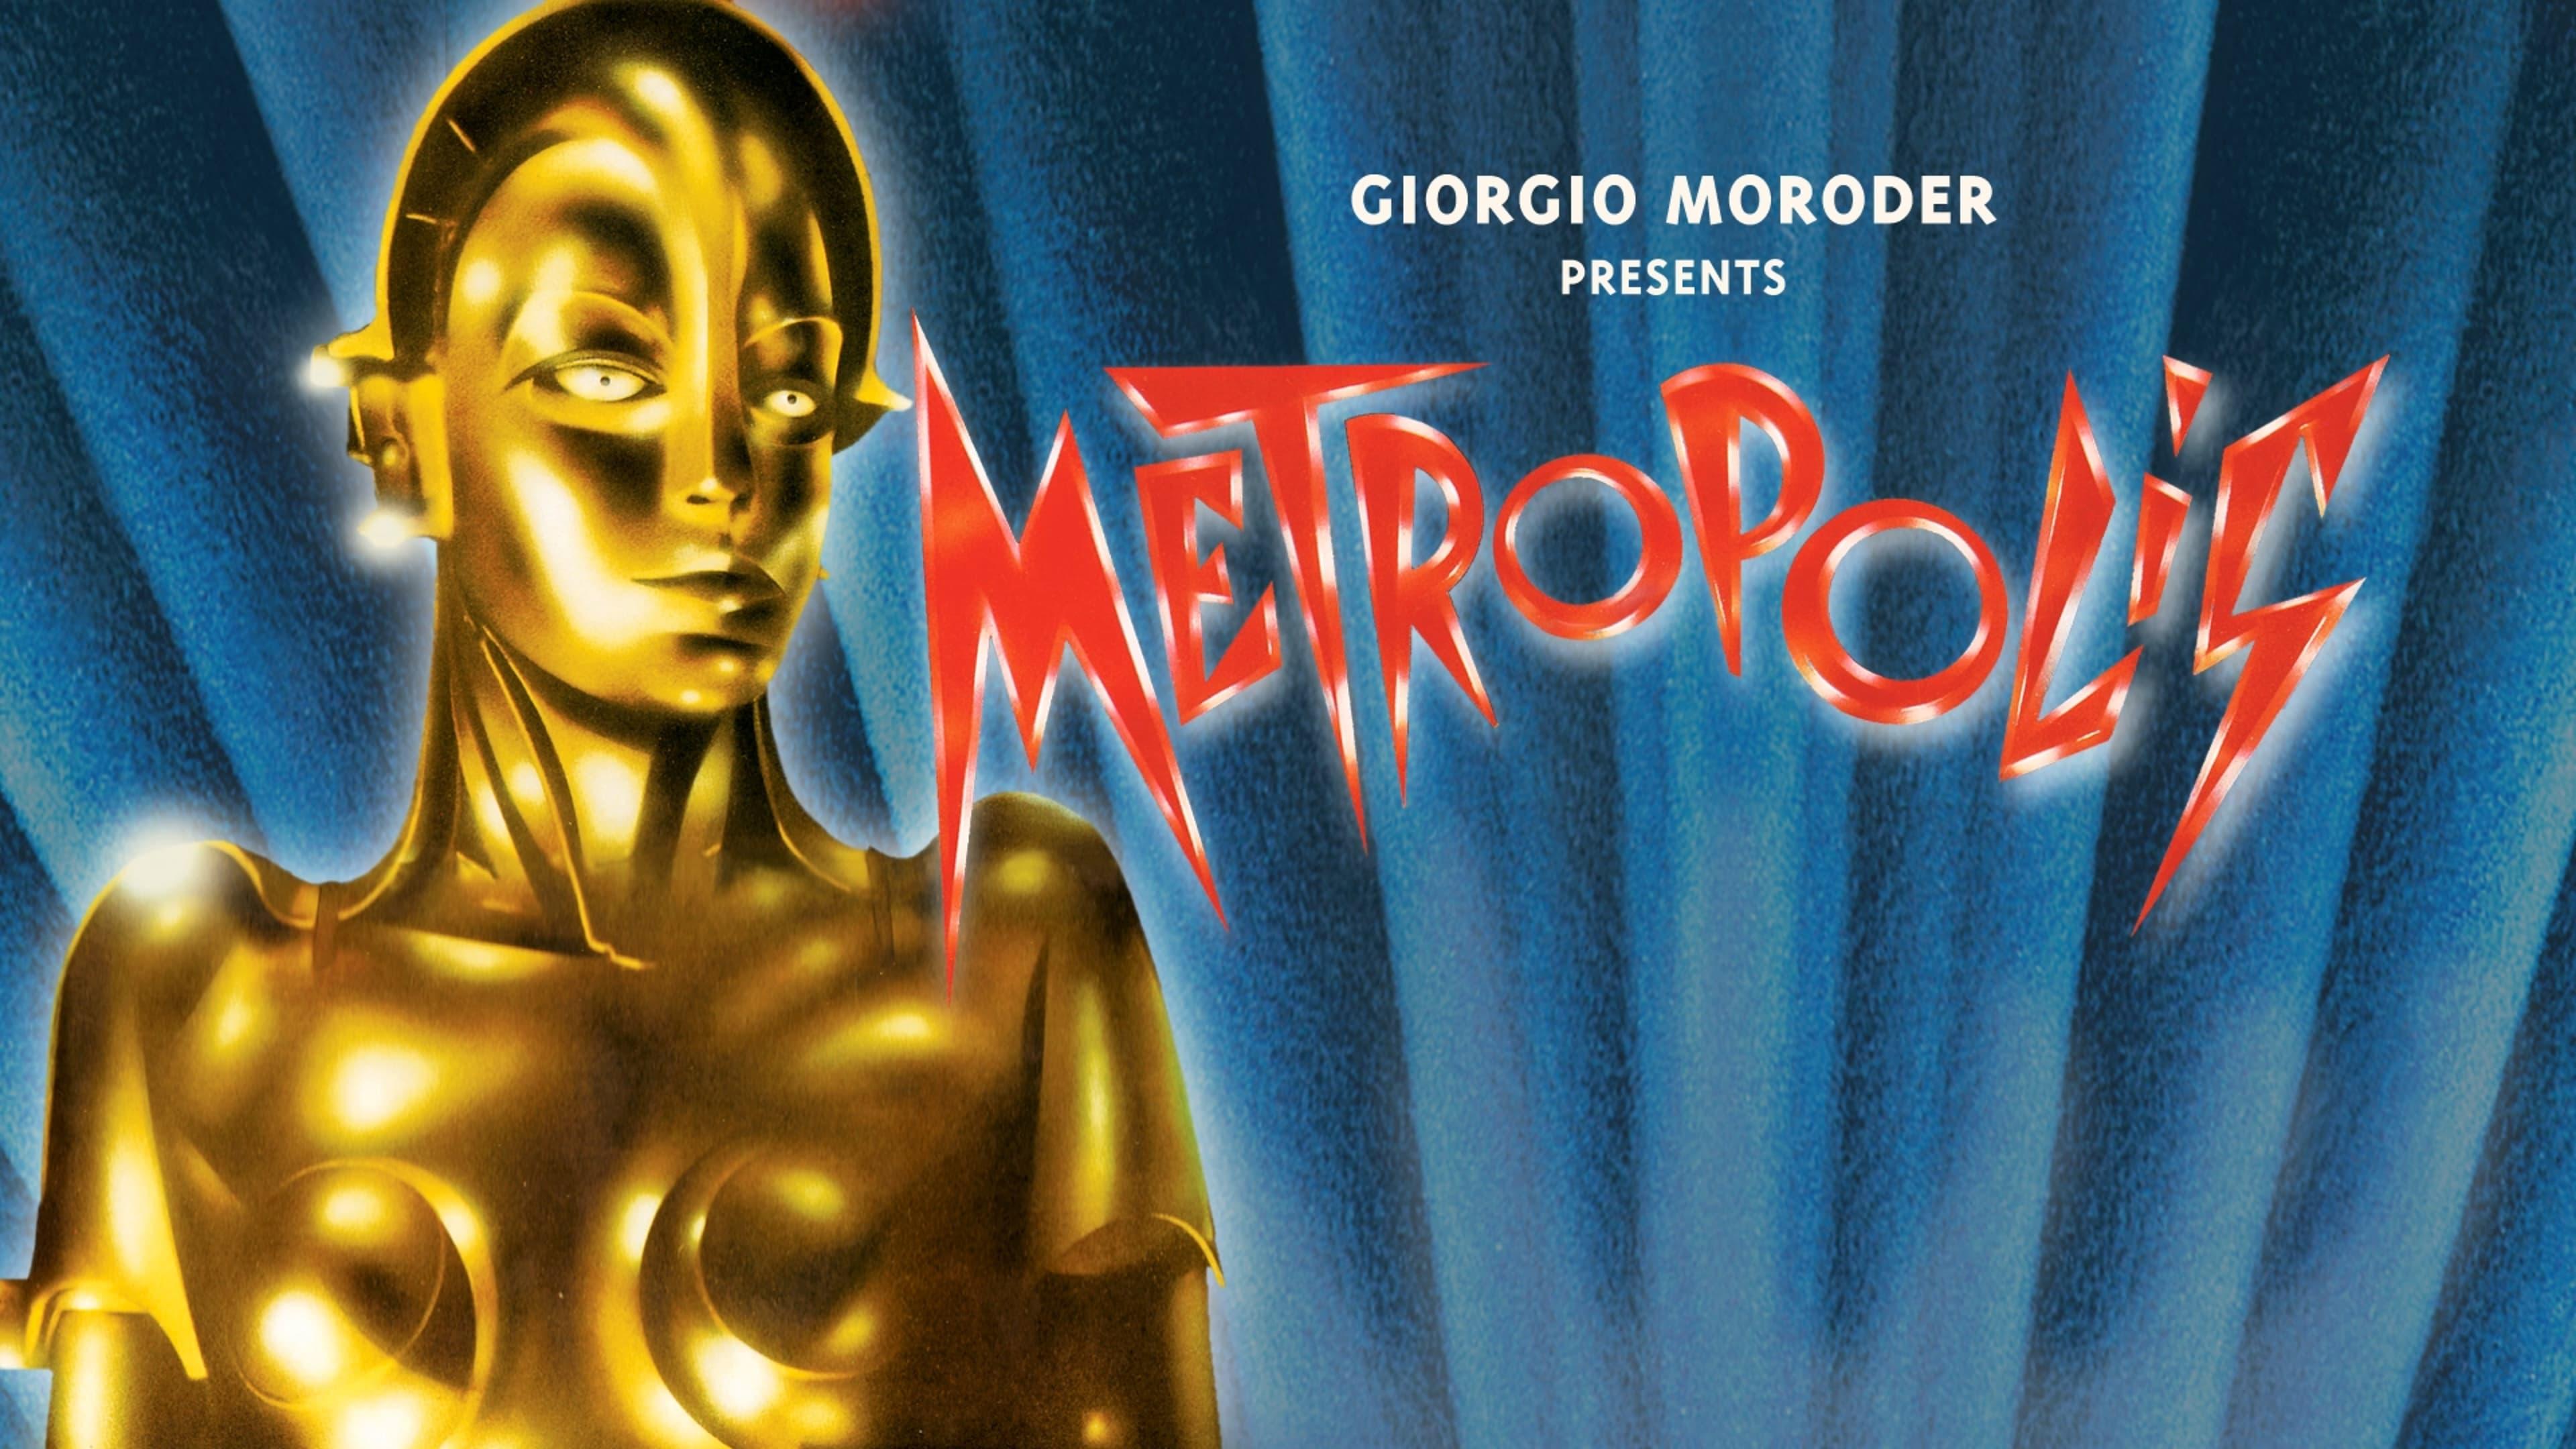 Giorgio Moroder's Metropolis backdrop